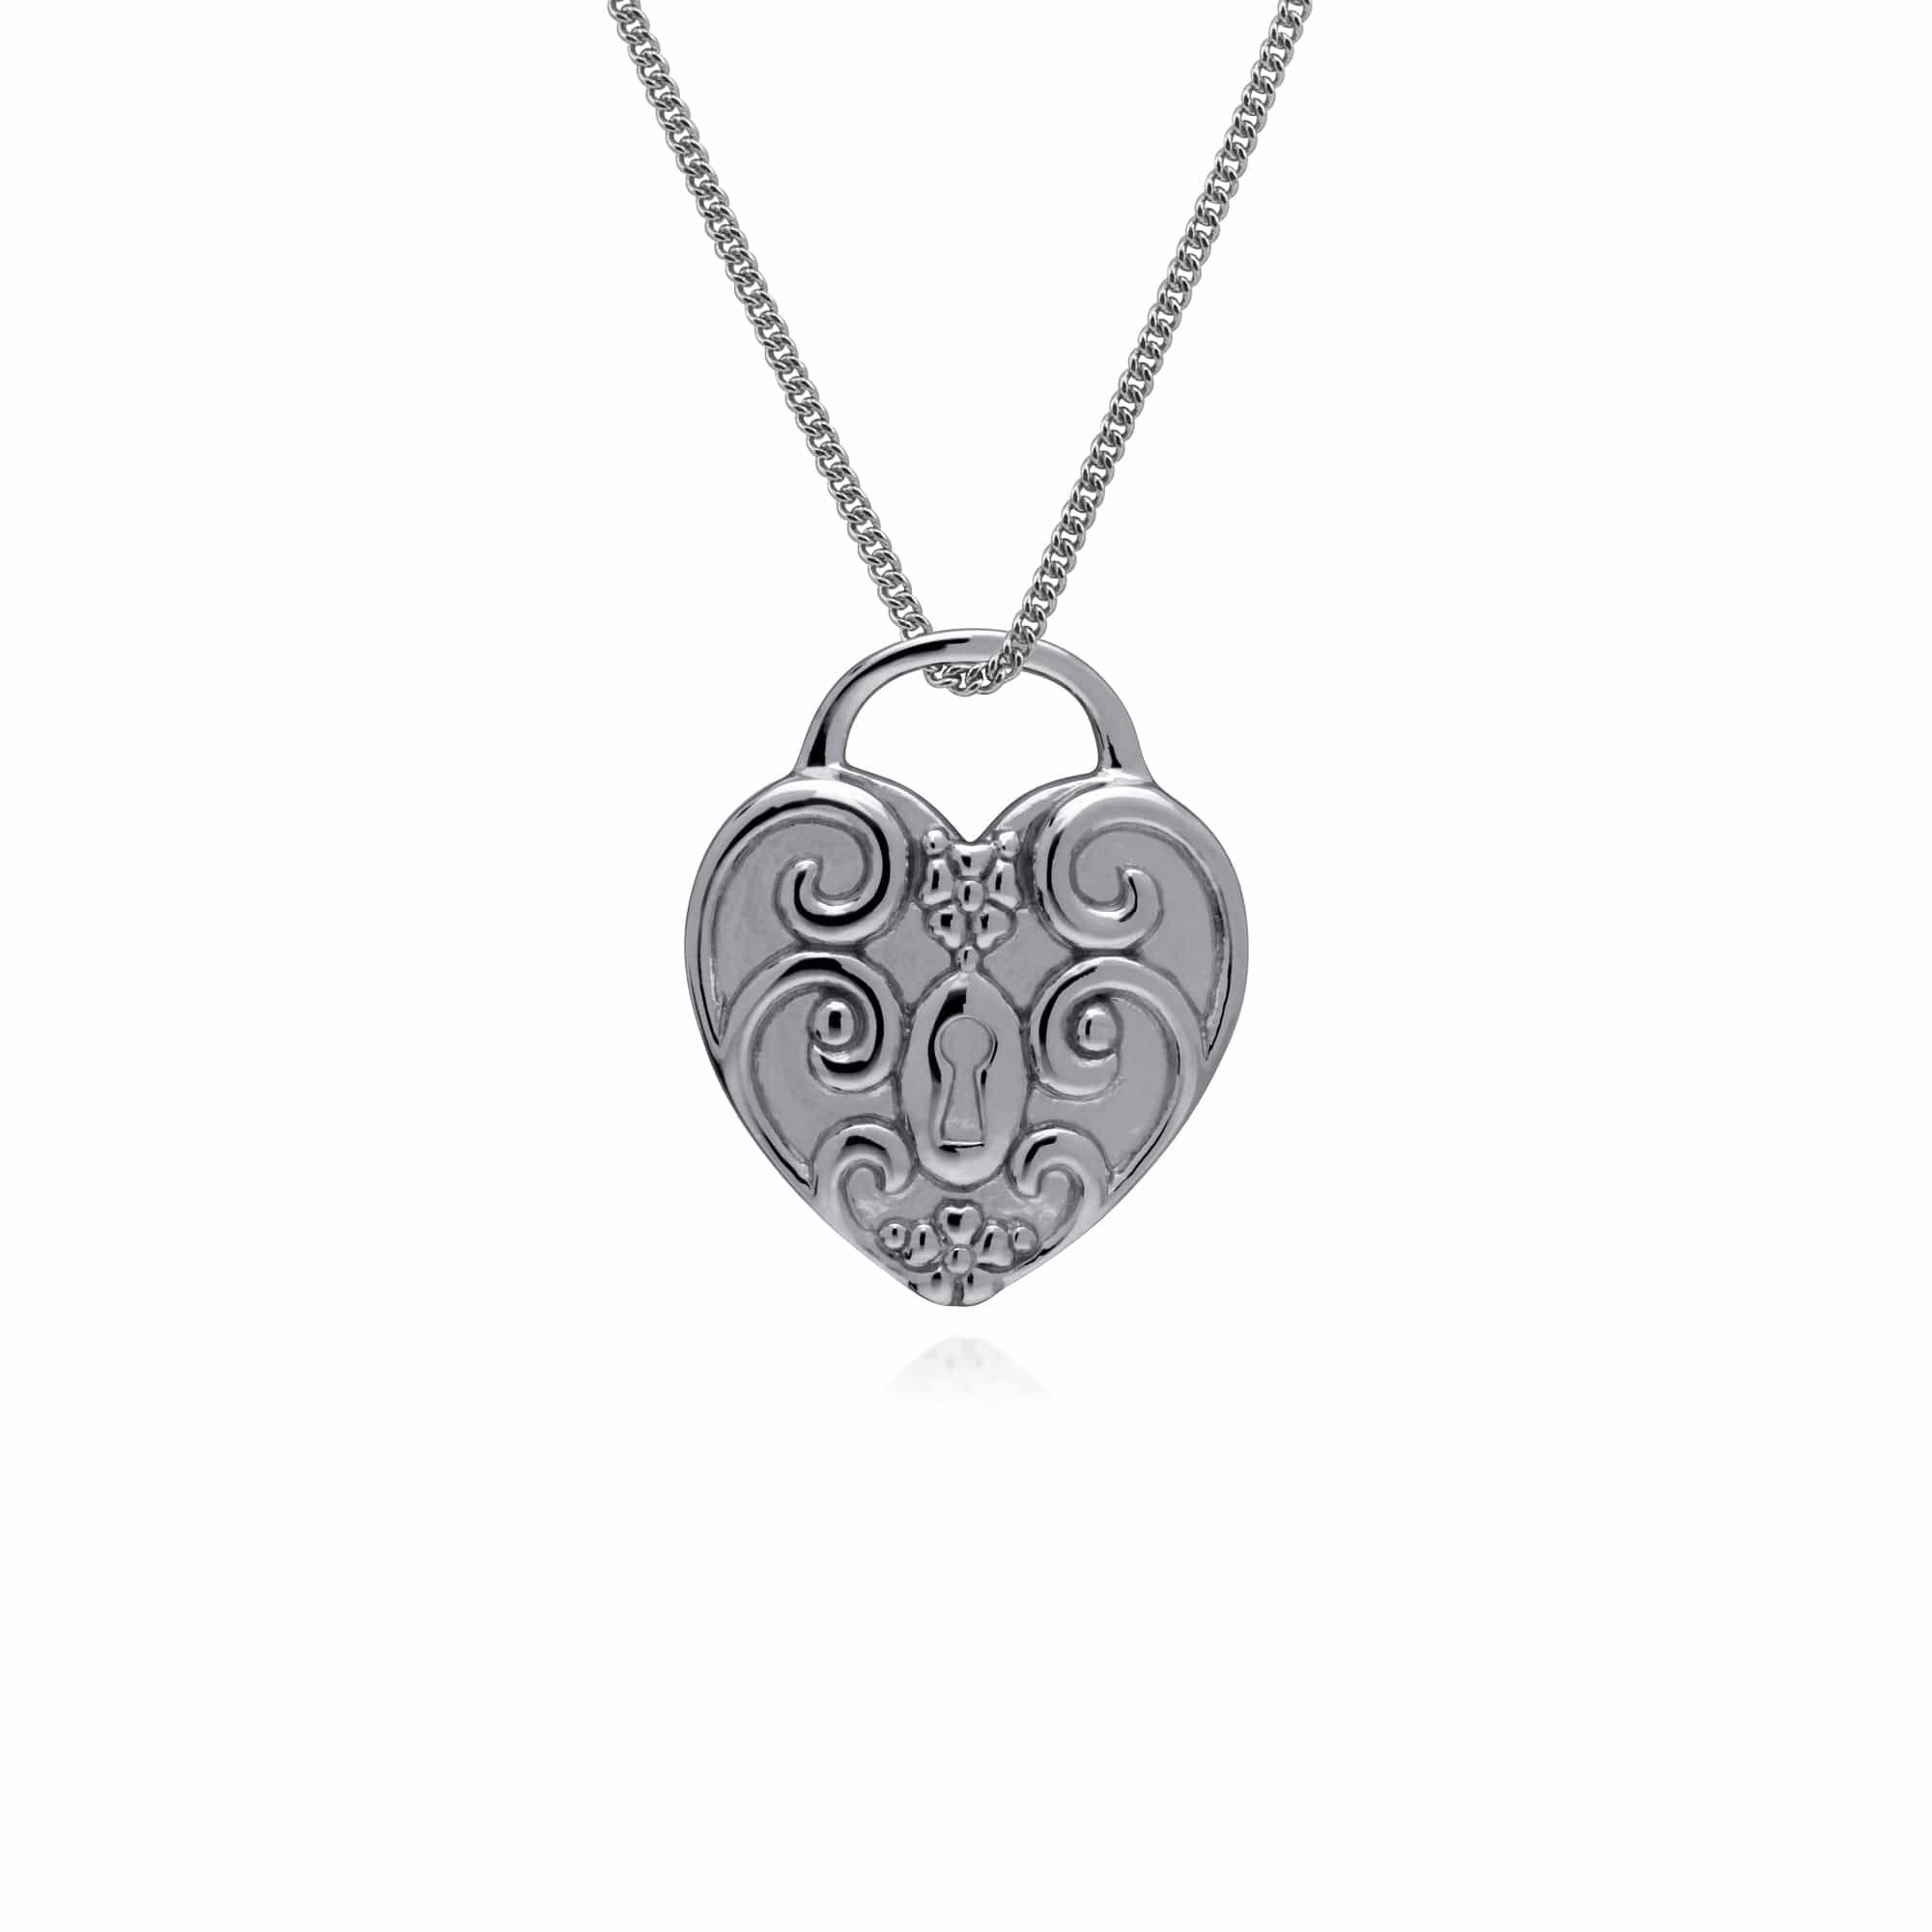 270P027606925-270P026601925 Classic Swirl Heart Lock Pendant & Tanzanite Charm in 925 Sterling Silver 3